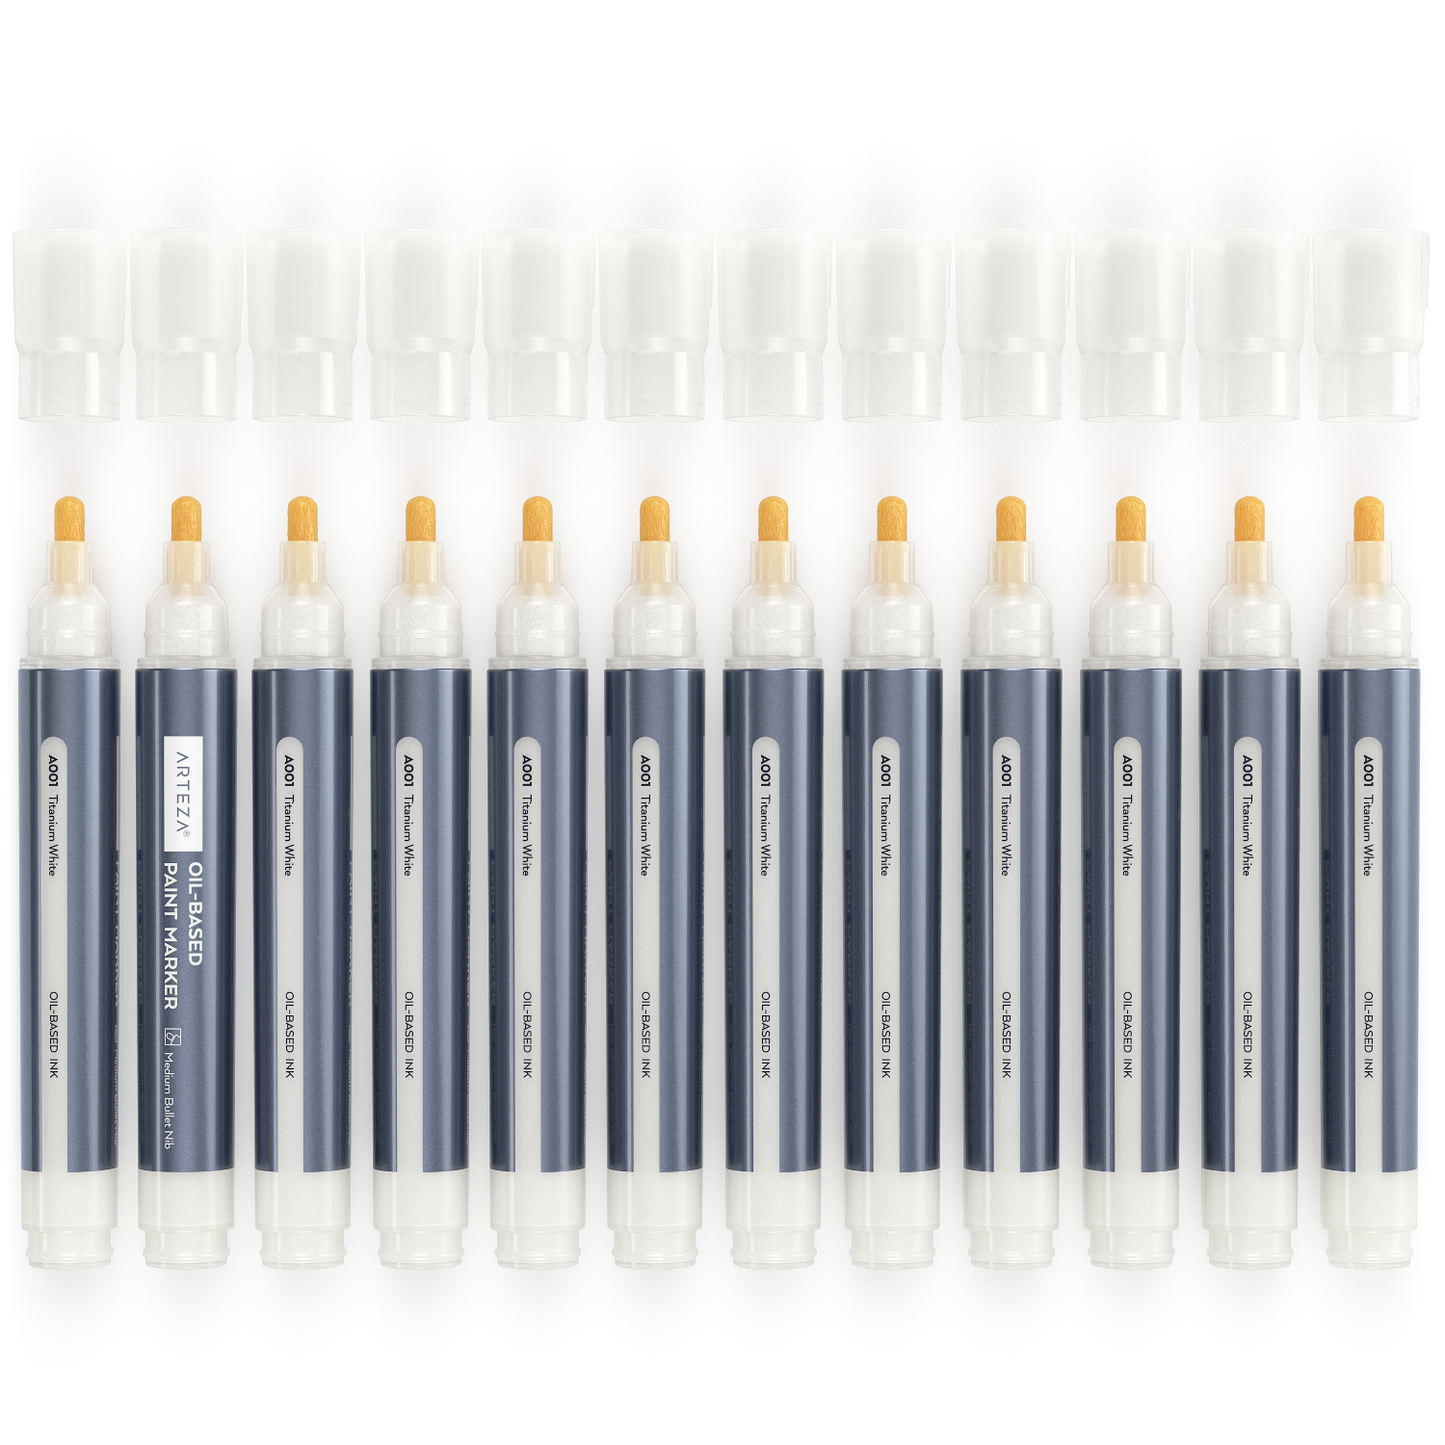 Oil Based Paint Markers, White, Medium Bullet Nib - Pack of 12